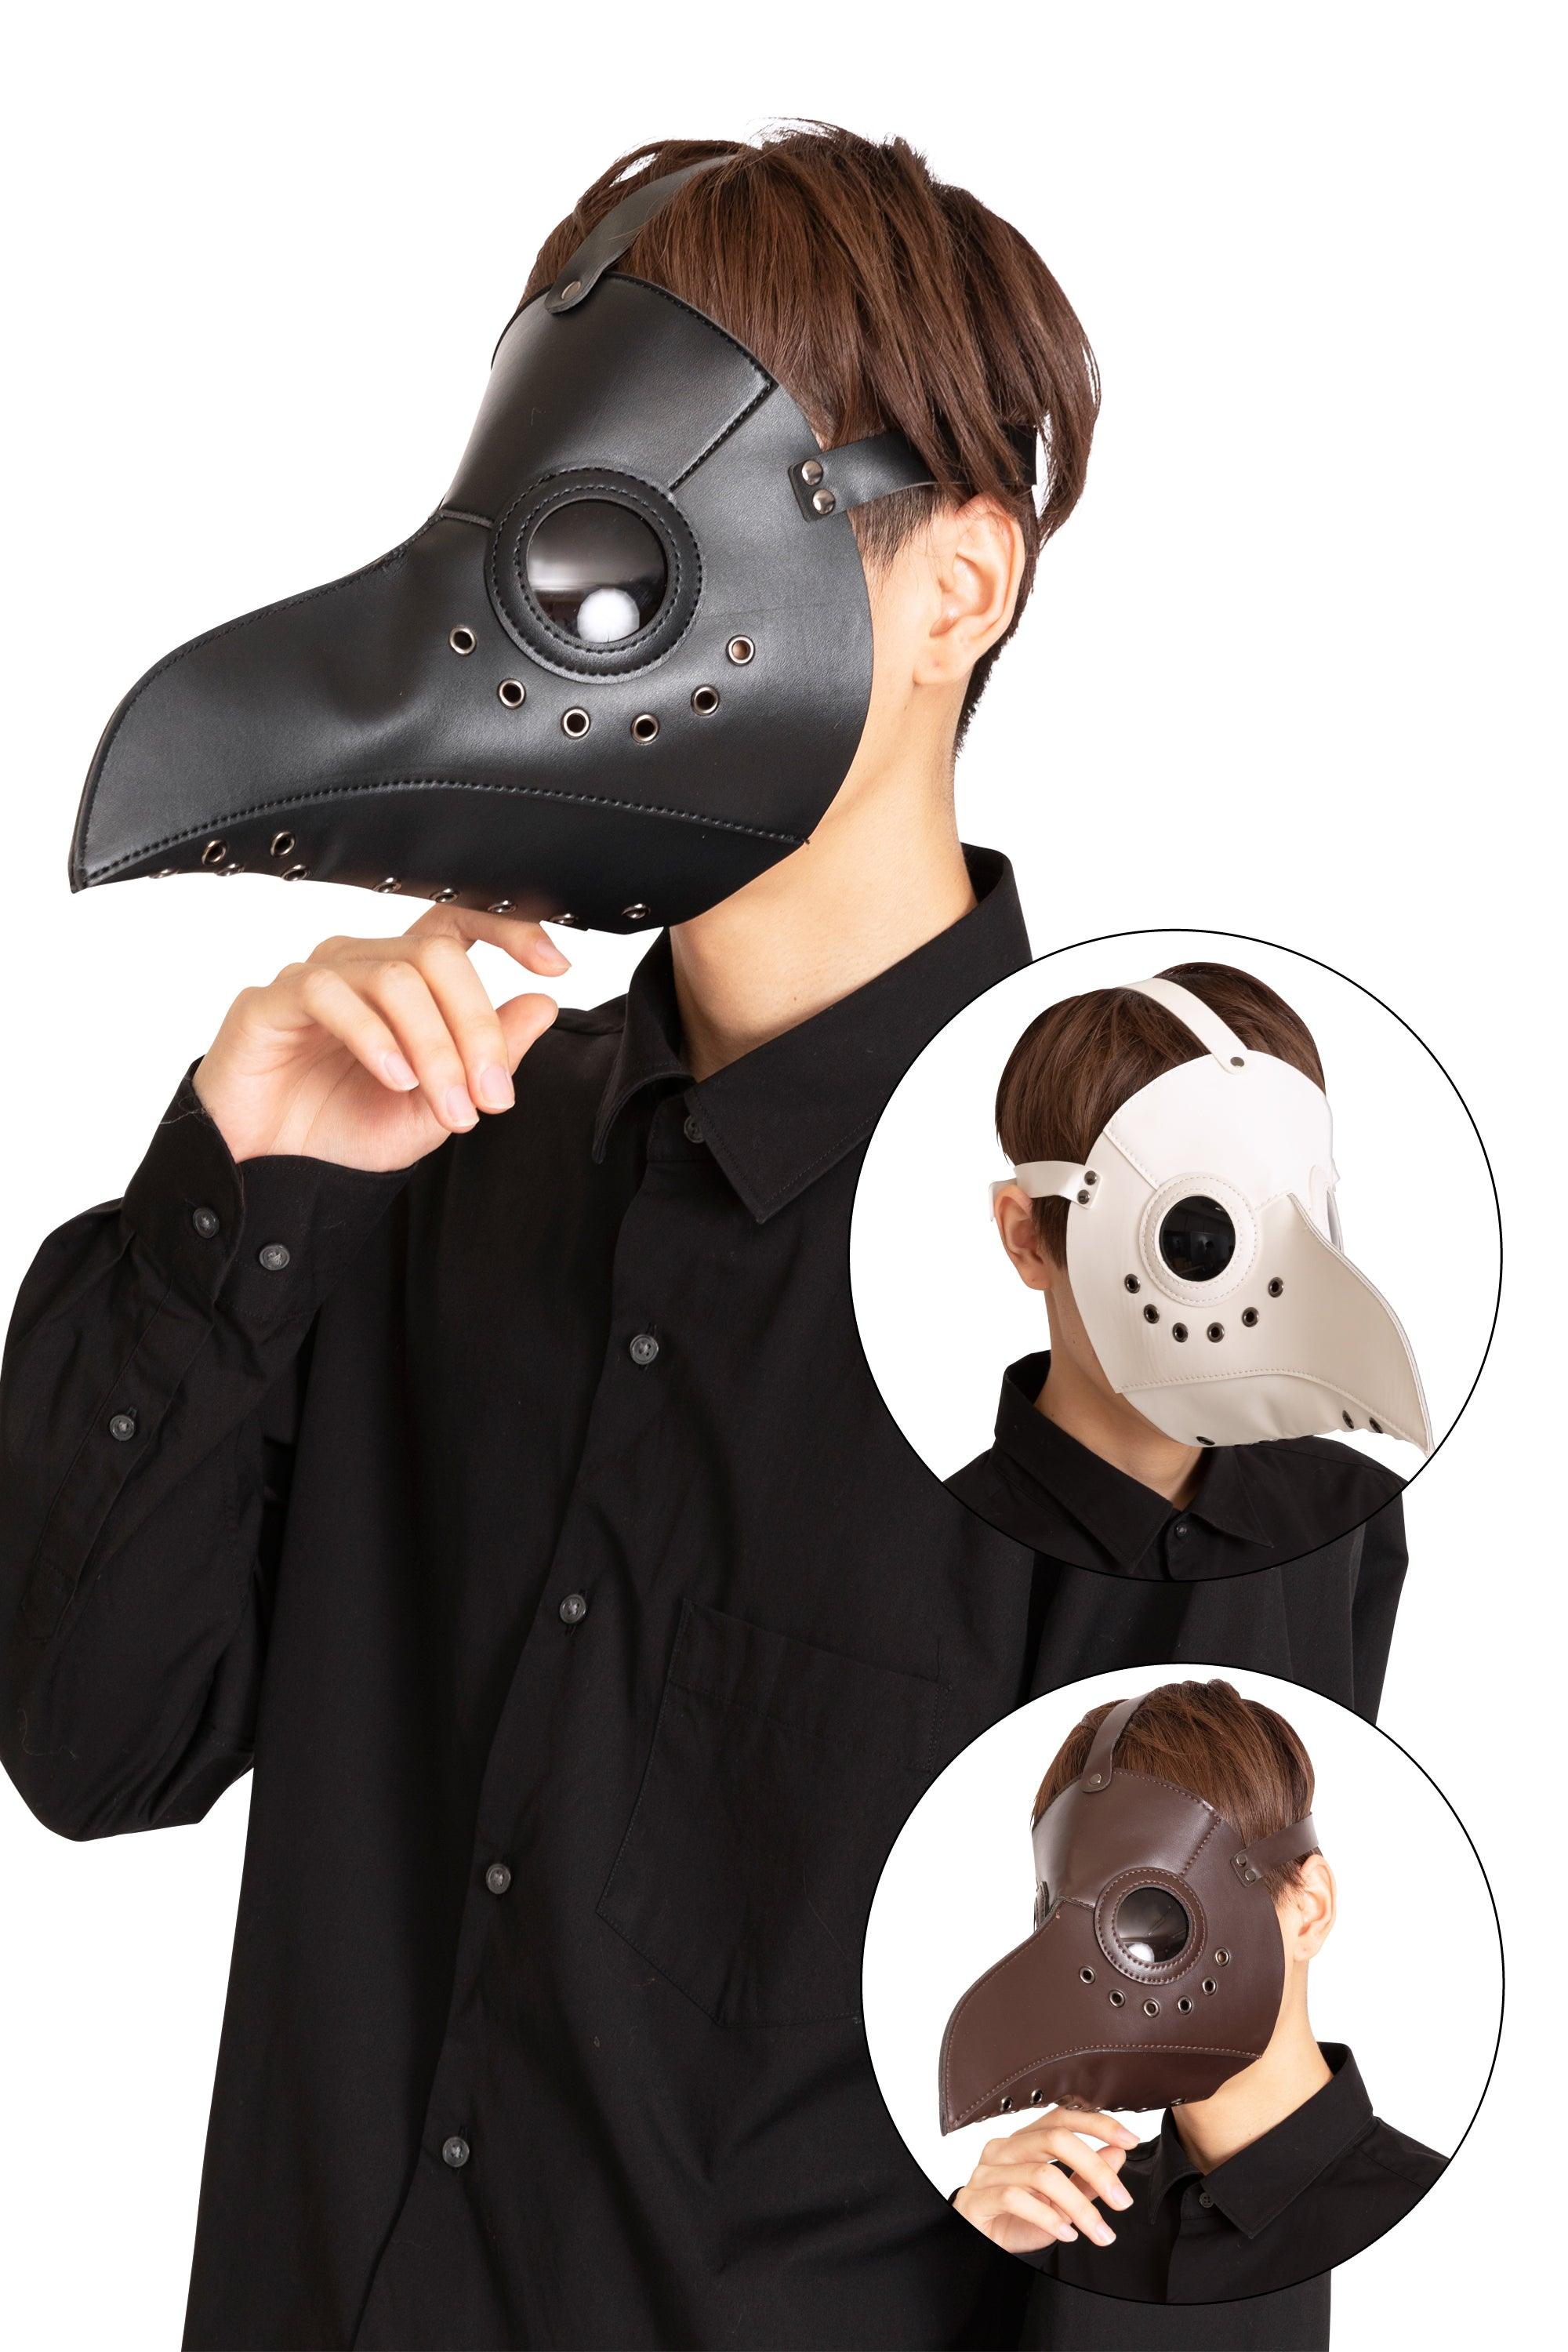 ハーフ クロウ ペストマスク 長鳥くちばし型 仮面 仮装パーティー 衣装 フェイスマスク カラー選択可能 パーティーグッズ ブラック ホワイト コスプレ パンクコスチューム ハロウィン ドクターマスク ハロウィーン  新品